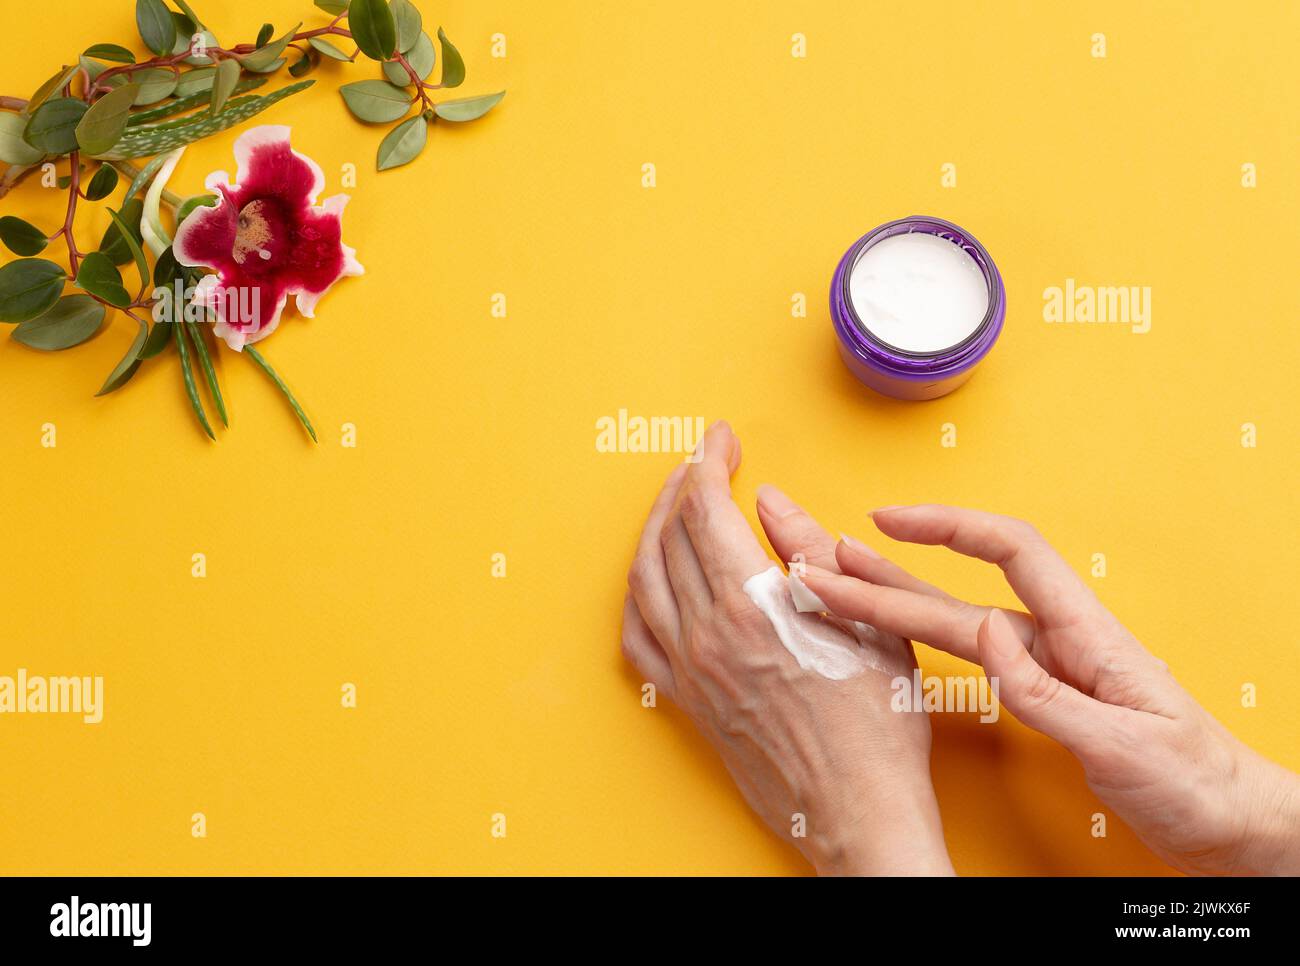 Las manos femeninas aplican crema sobre fondo amarillo con espacio de copia. Cosmetología y concepto del cuidado casero. Máscaras naturales orgánicas saludables Foto de stock